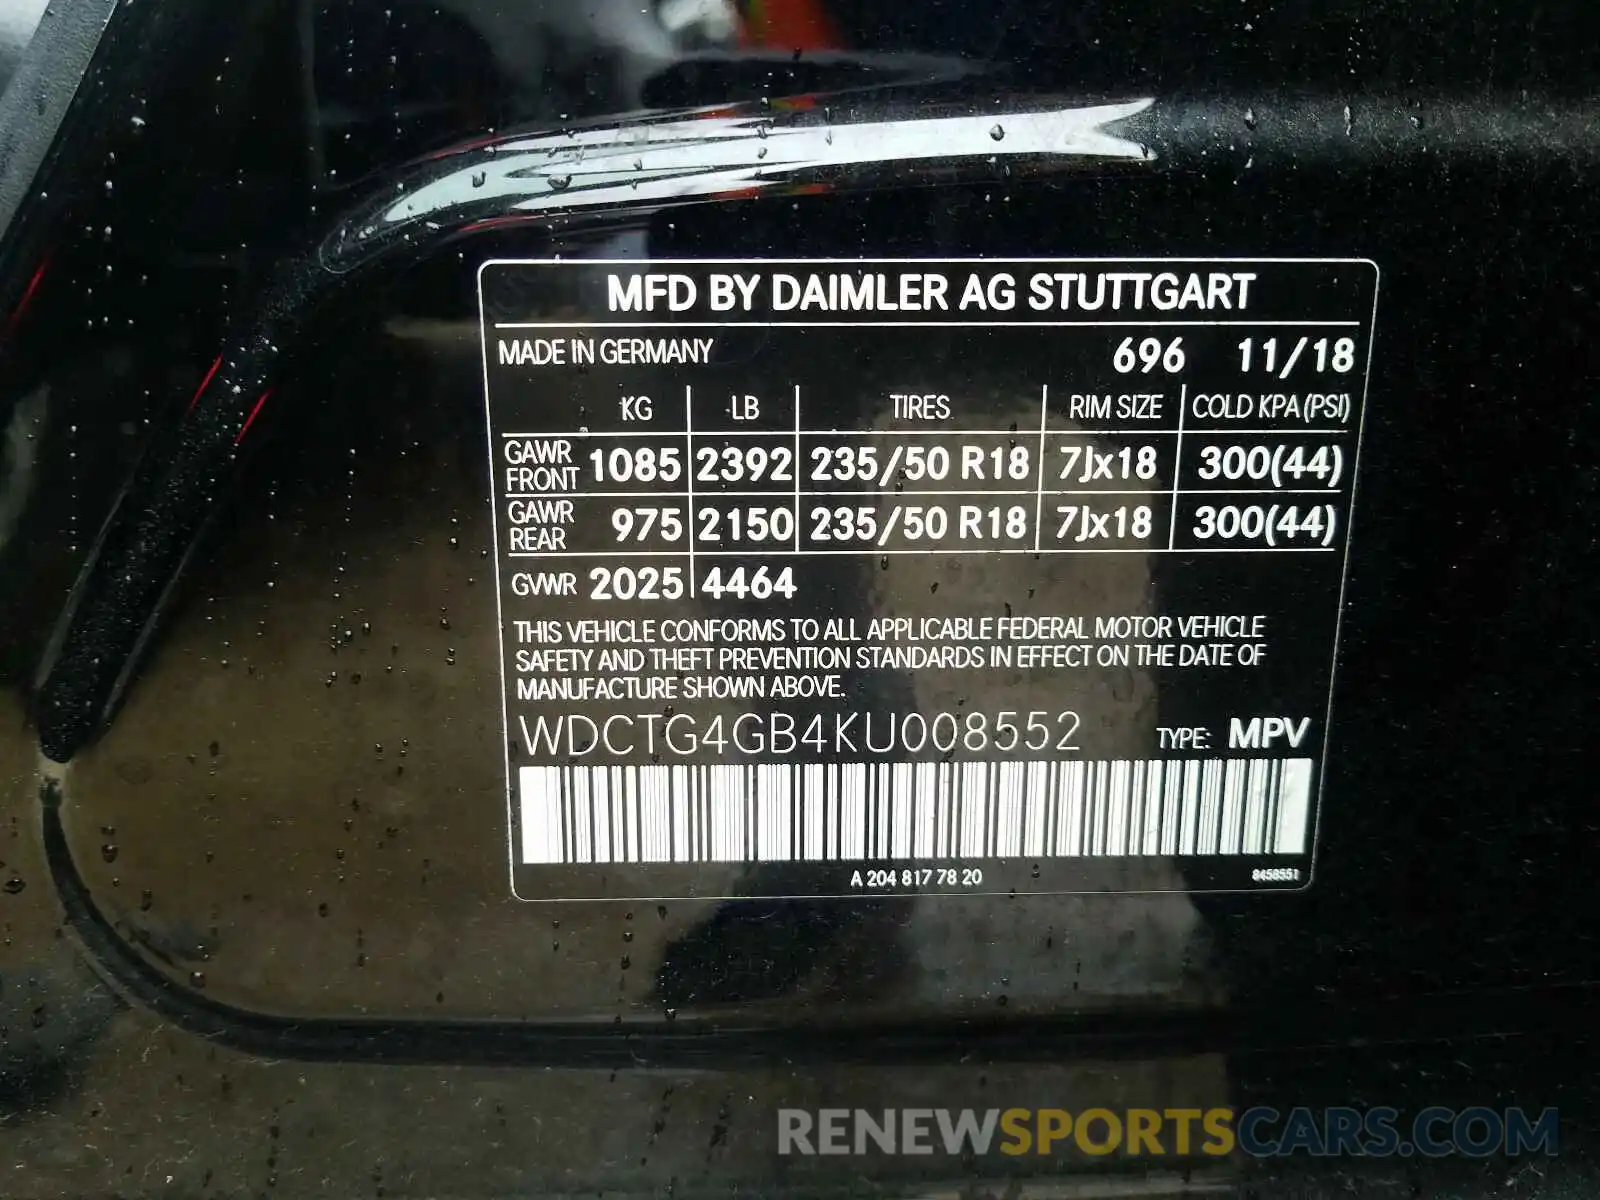 10 Photograph of a damaged car WDCTG4GB4KU008552 MERCEDES-BENZ G CLASS 2019